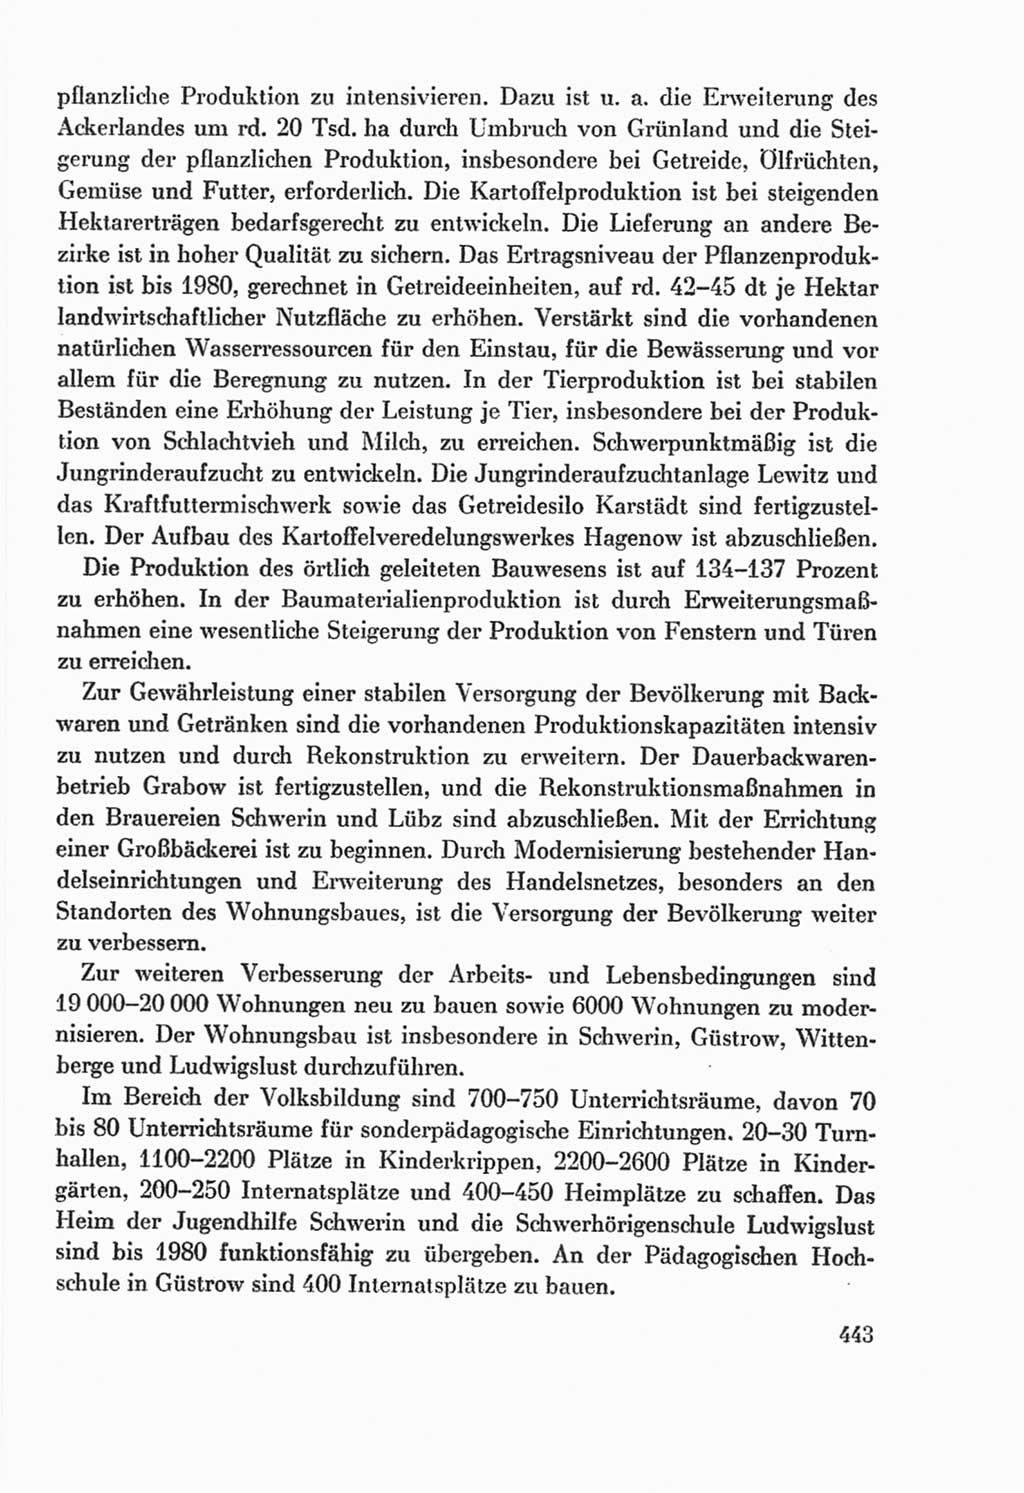 Protokoll der Verhandlungen des Ⅸ. Parteitages der Sozialistischen Einheitspartei Deutschlands (SED) [Deutsche Demokratische Republik (DDR)] 1976, Band 2, Seite 443 (Prot. Verh. Ⅸ. PT SED DDR 1976, Bd. 2, S. 443)